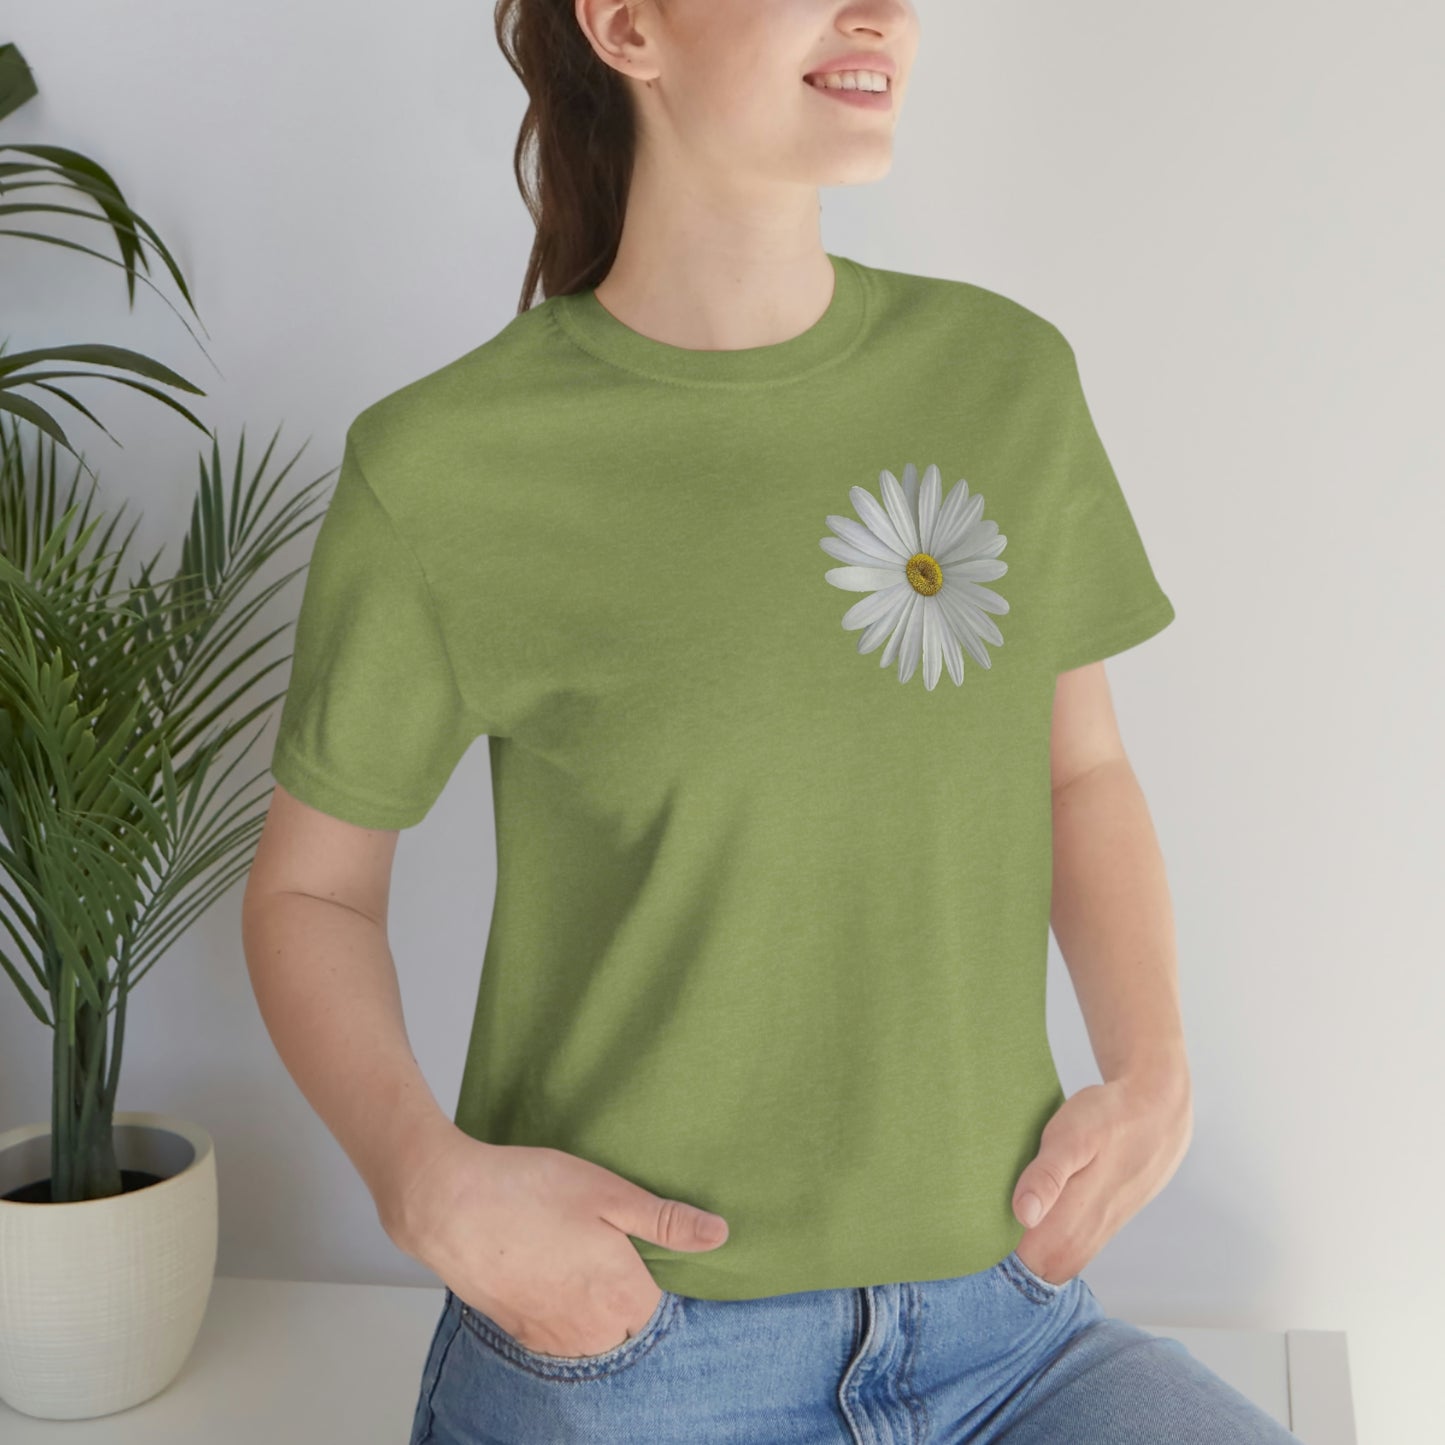 Daisy Shirt Floral Shirt Gift,  Boho Shirt, Birth Month Flower, Gift For Mom, Daisy Women Shirt Flower Tee Summer Shirt,